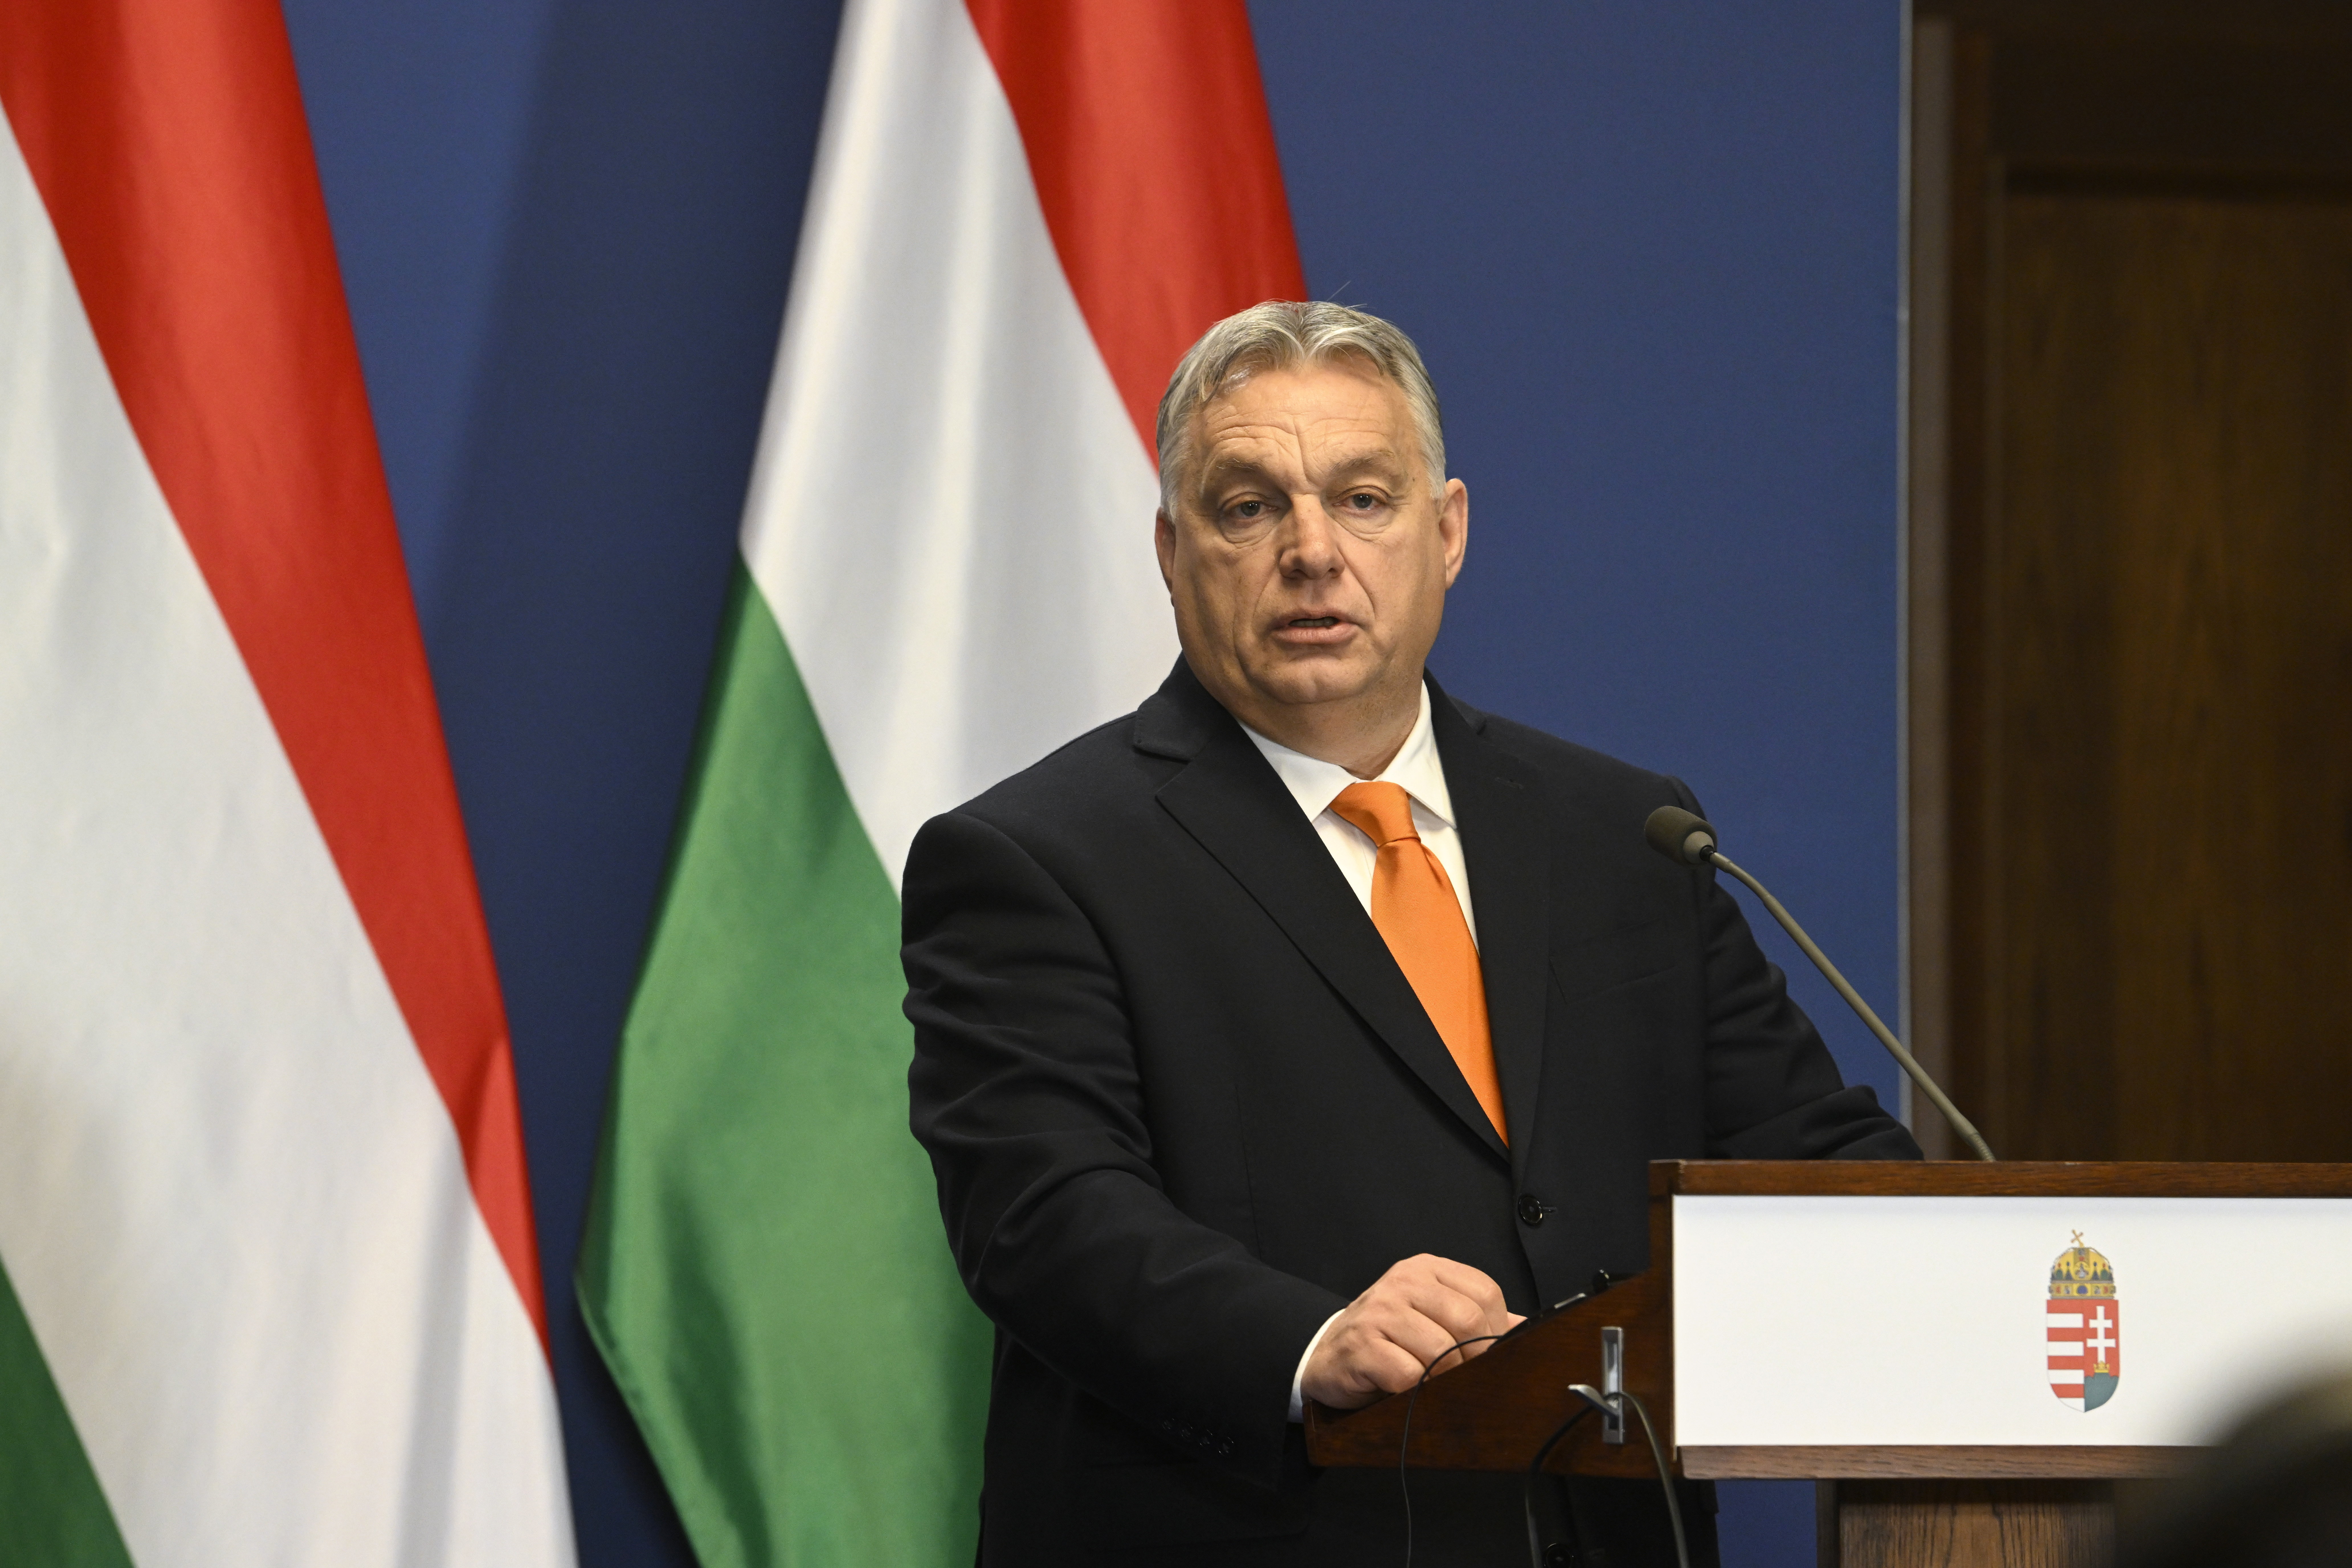 Magyarországot a falhoz fogják szorítani az EU-csúcson a lengyel EP-képviselő szerint